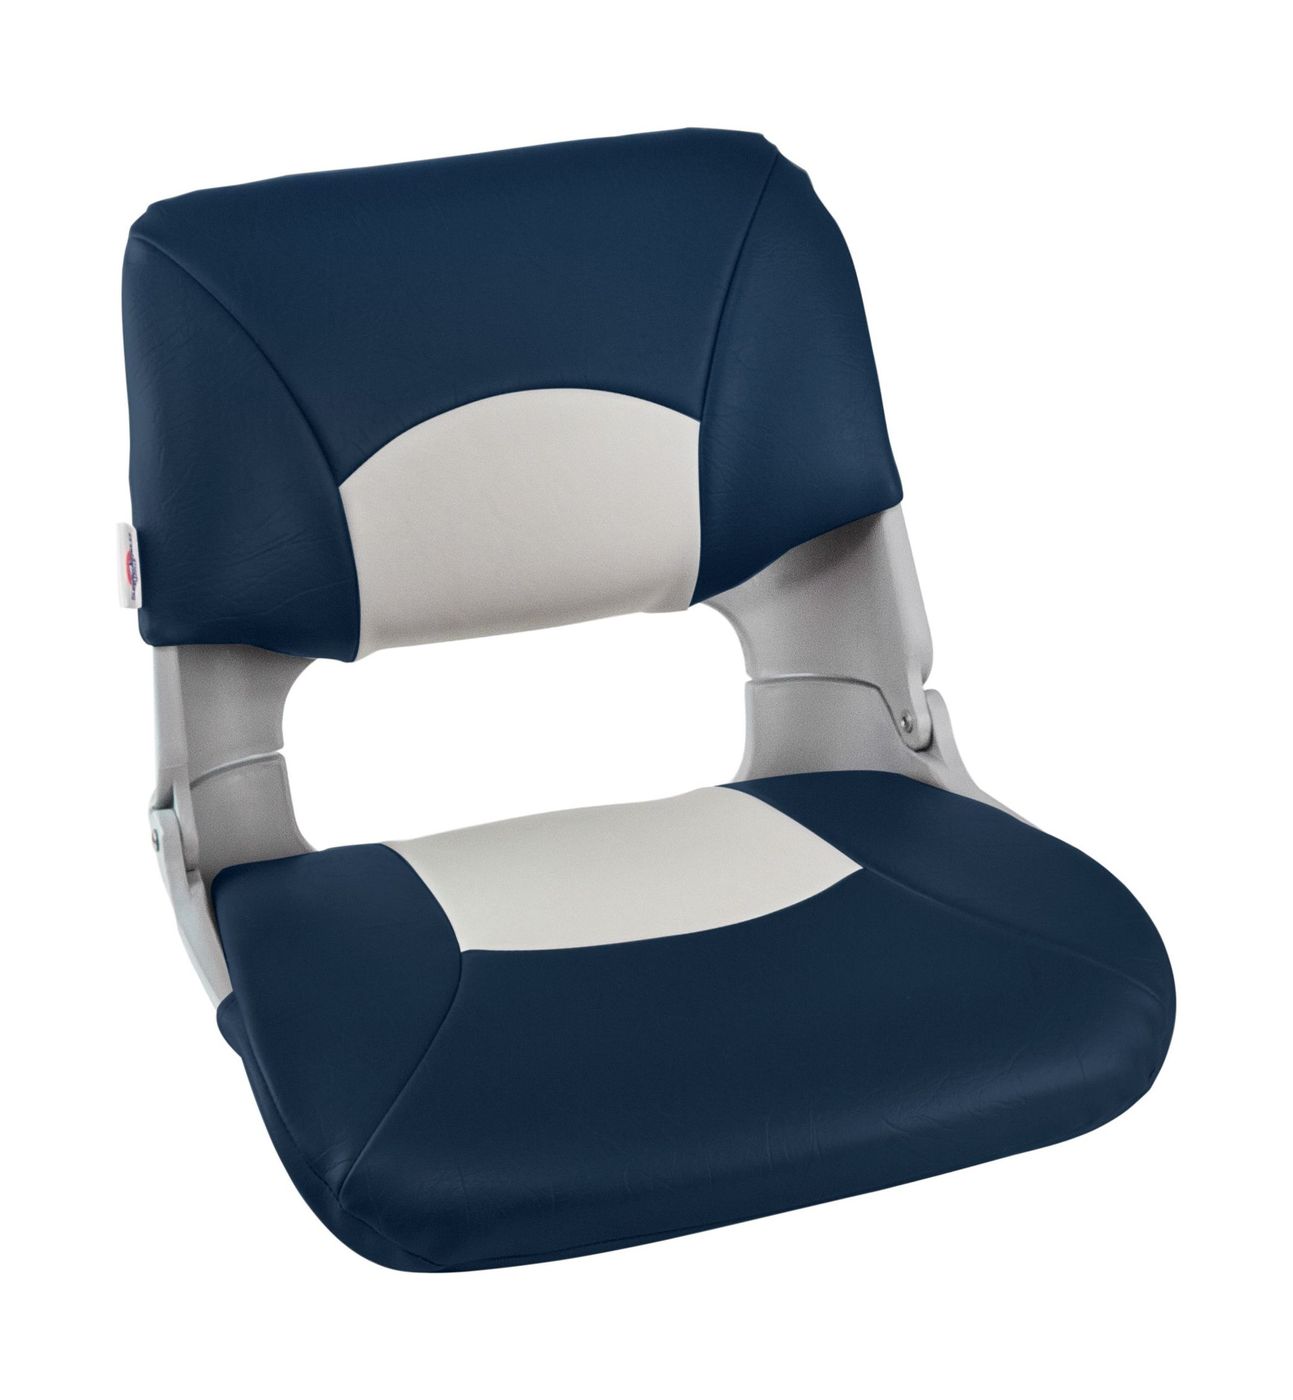 Кресло складное мягкое SKIPPER, цвет серый/синий 1061019 кресло мягкое складное обивка винил синий угольный marine rocket 75157bcb mr